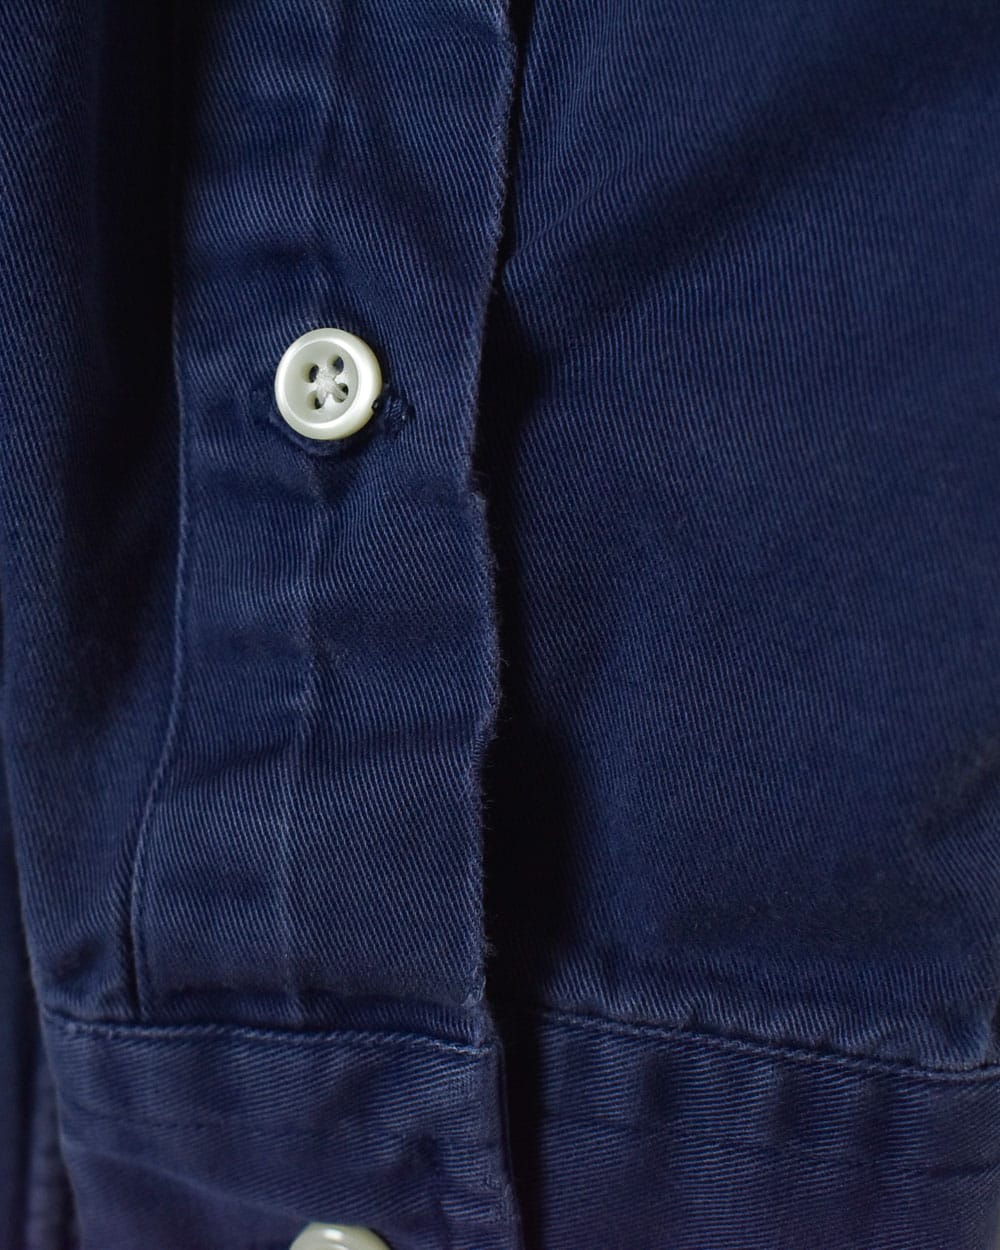 Navy Polo Ralph Lauren Shirt - Small